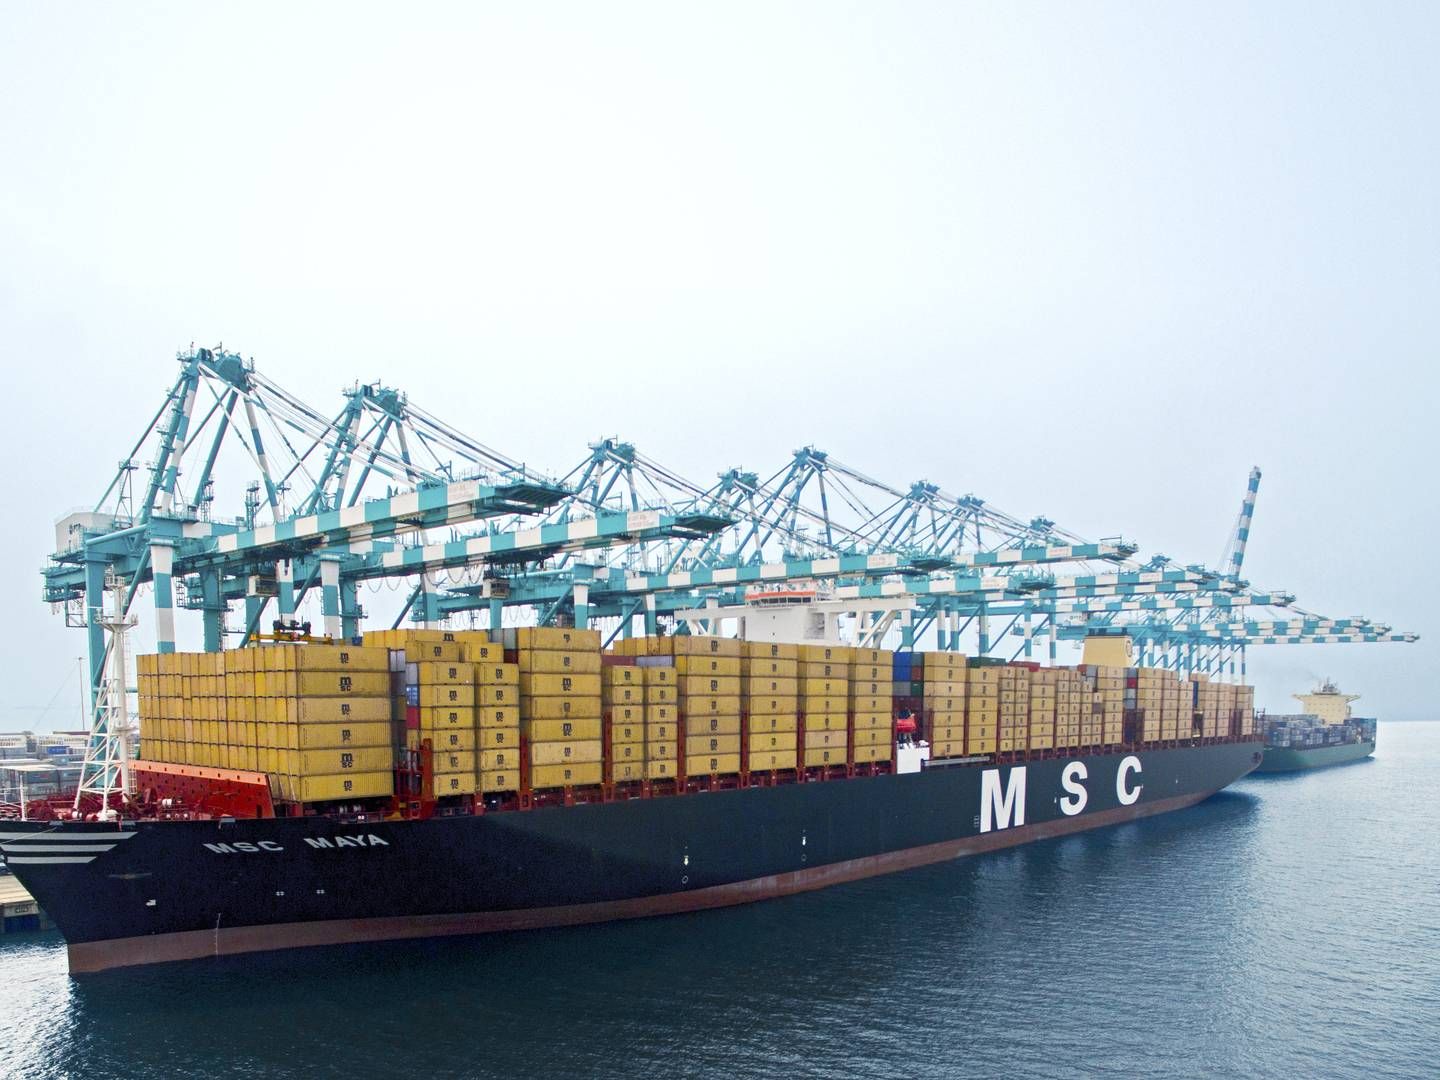 Verdens største containerrederi, MSC, har aktuelt 118 skibe under bygning på skibsværfter. Det svarer til mere end en tredjedel af den eksisterende flåde. | Foto: PR / MSC